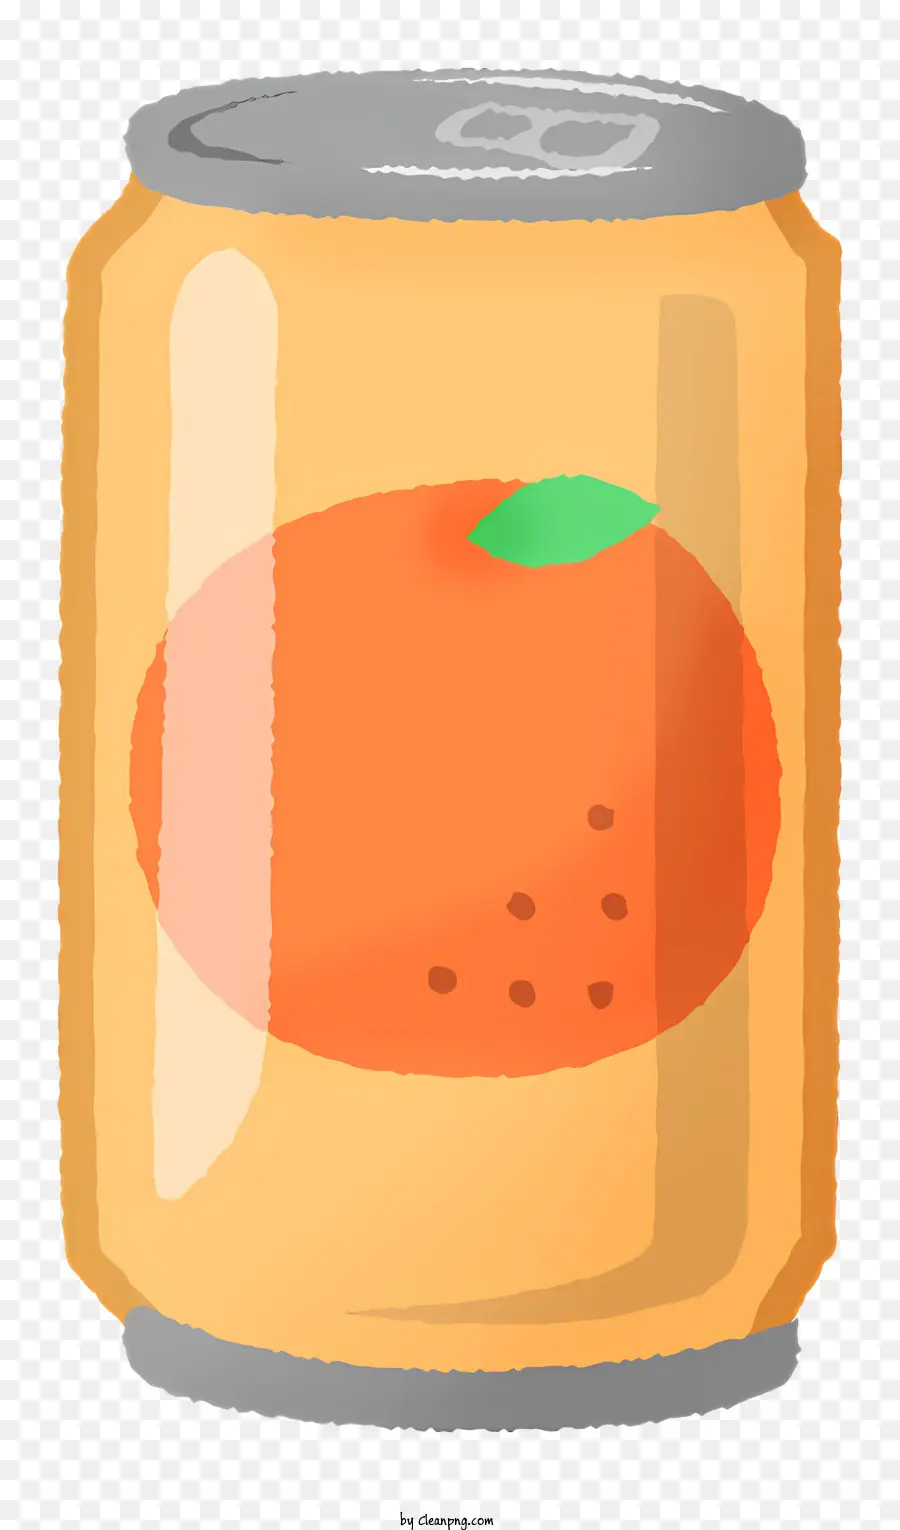 Icon Orangensaft Dosen -Orangensaft Alkoholisches Getränk Zitrusfrüchte - Orangensaft in Dosen mit sichtbarem weißem Etikett